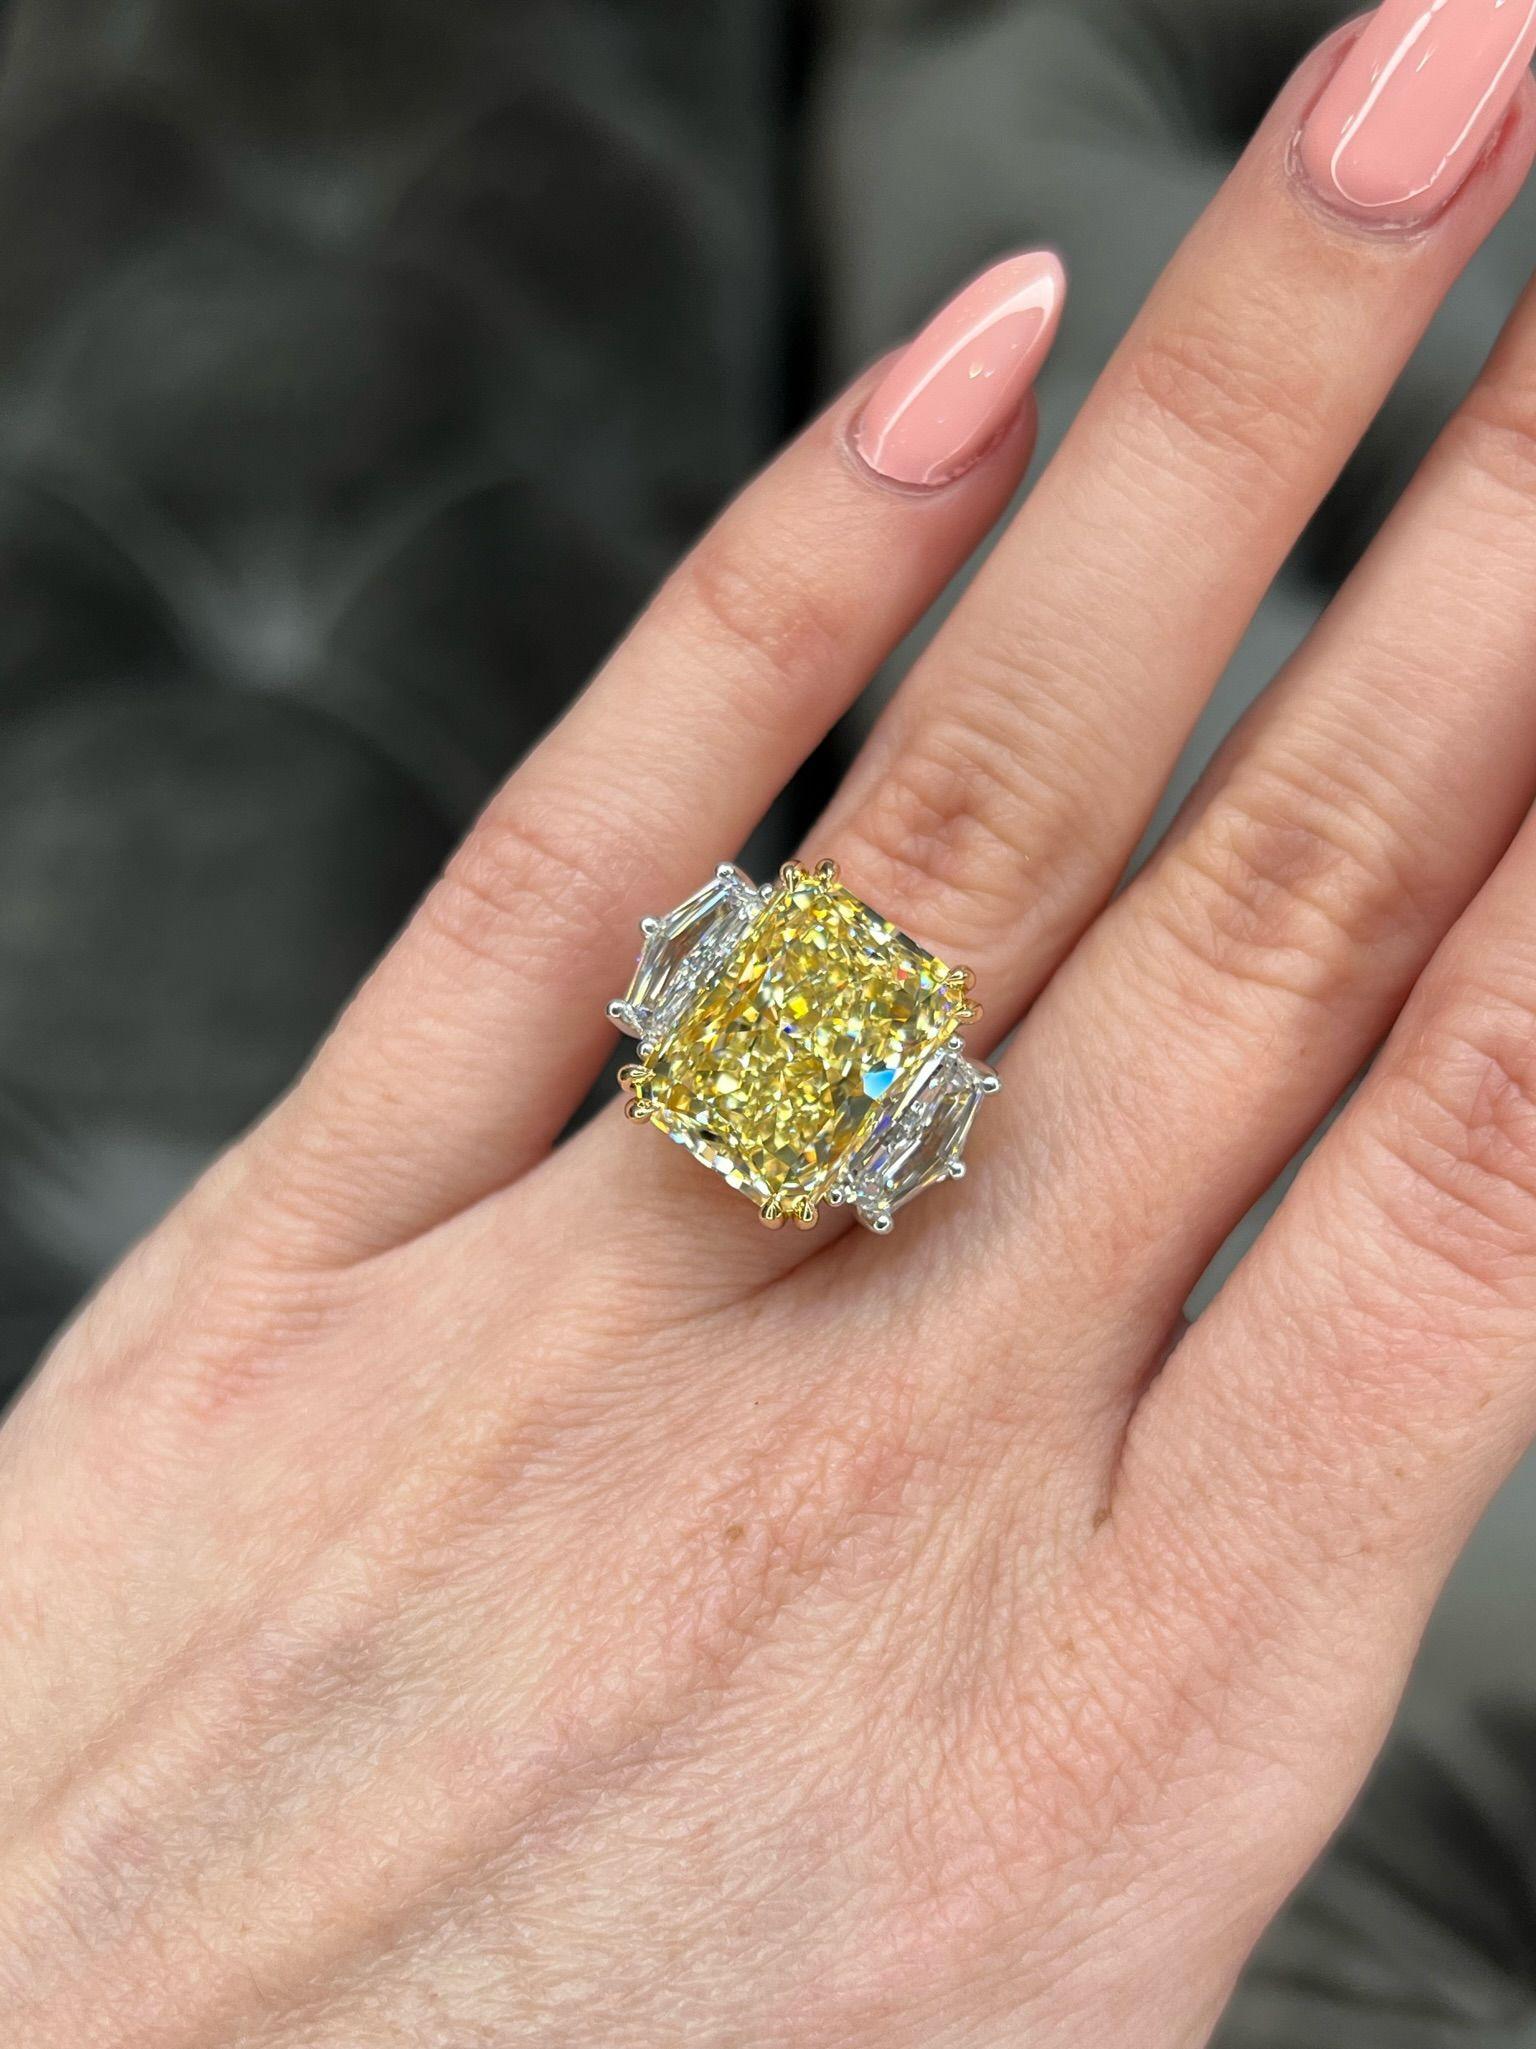 David Rosenberg 11.18 Radiant Fancy Yellow VVS2 GIA Diamond Engagement Ring For Sale 7